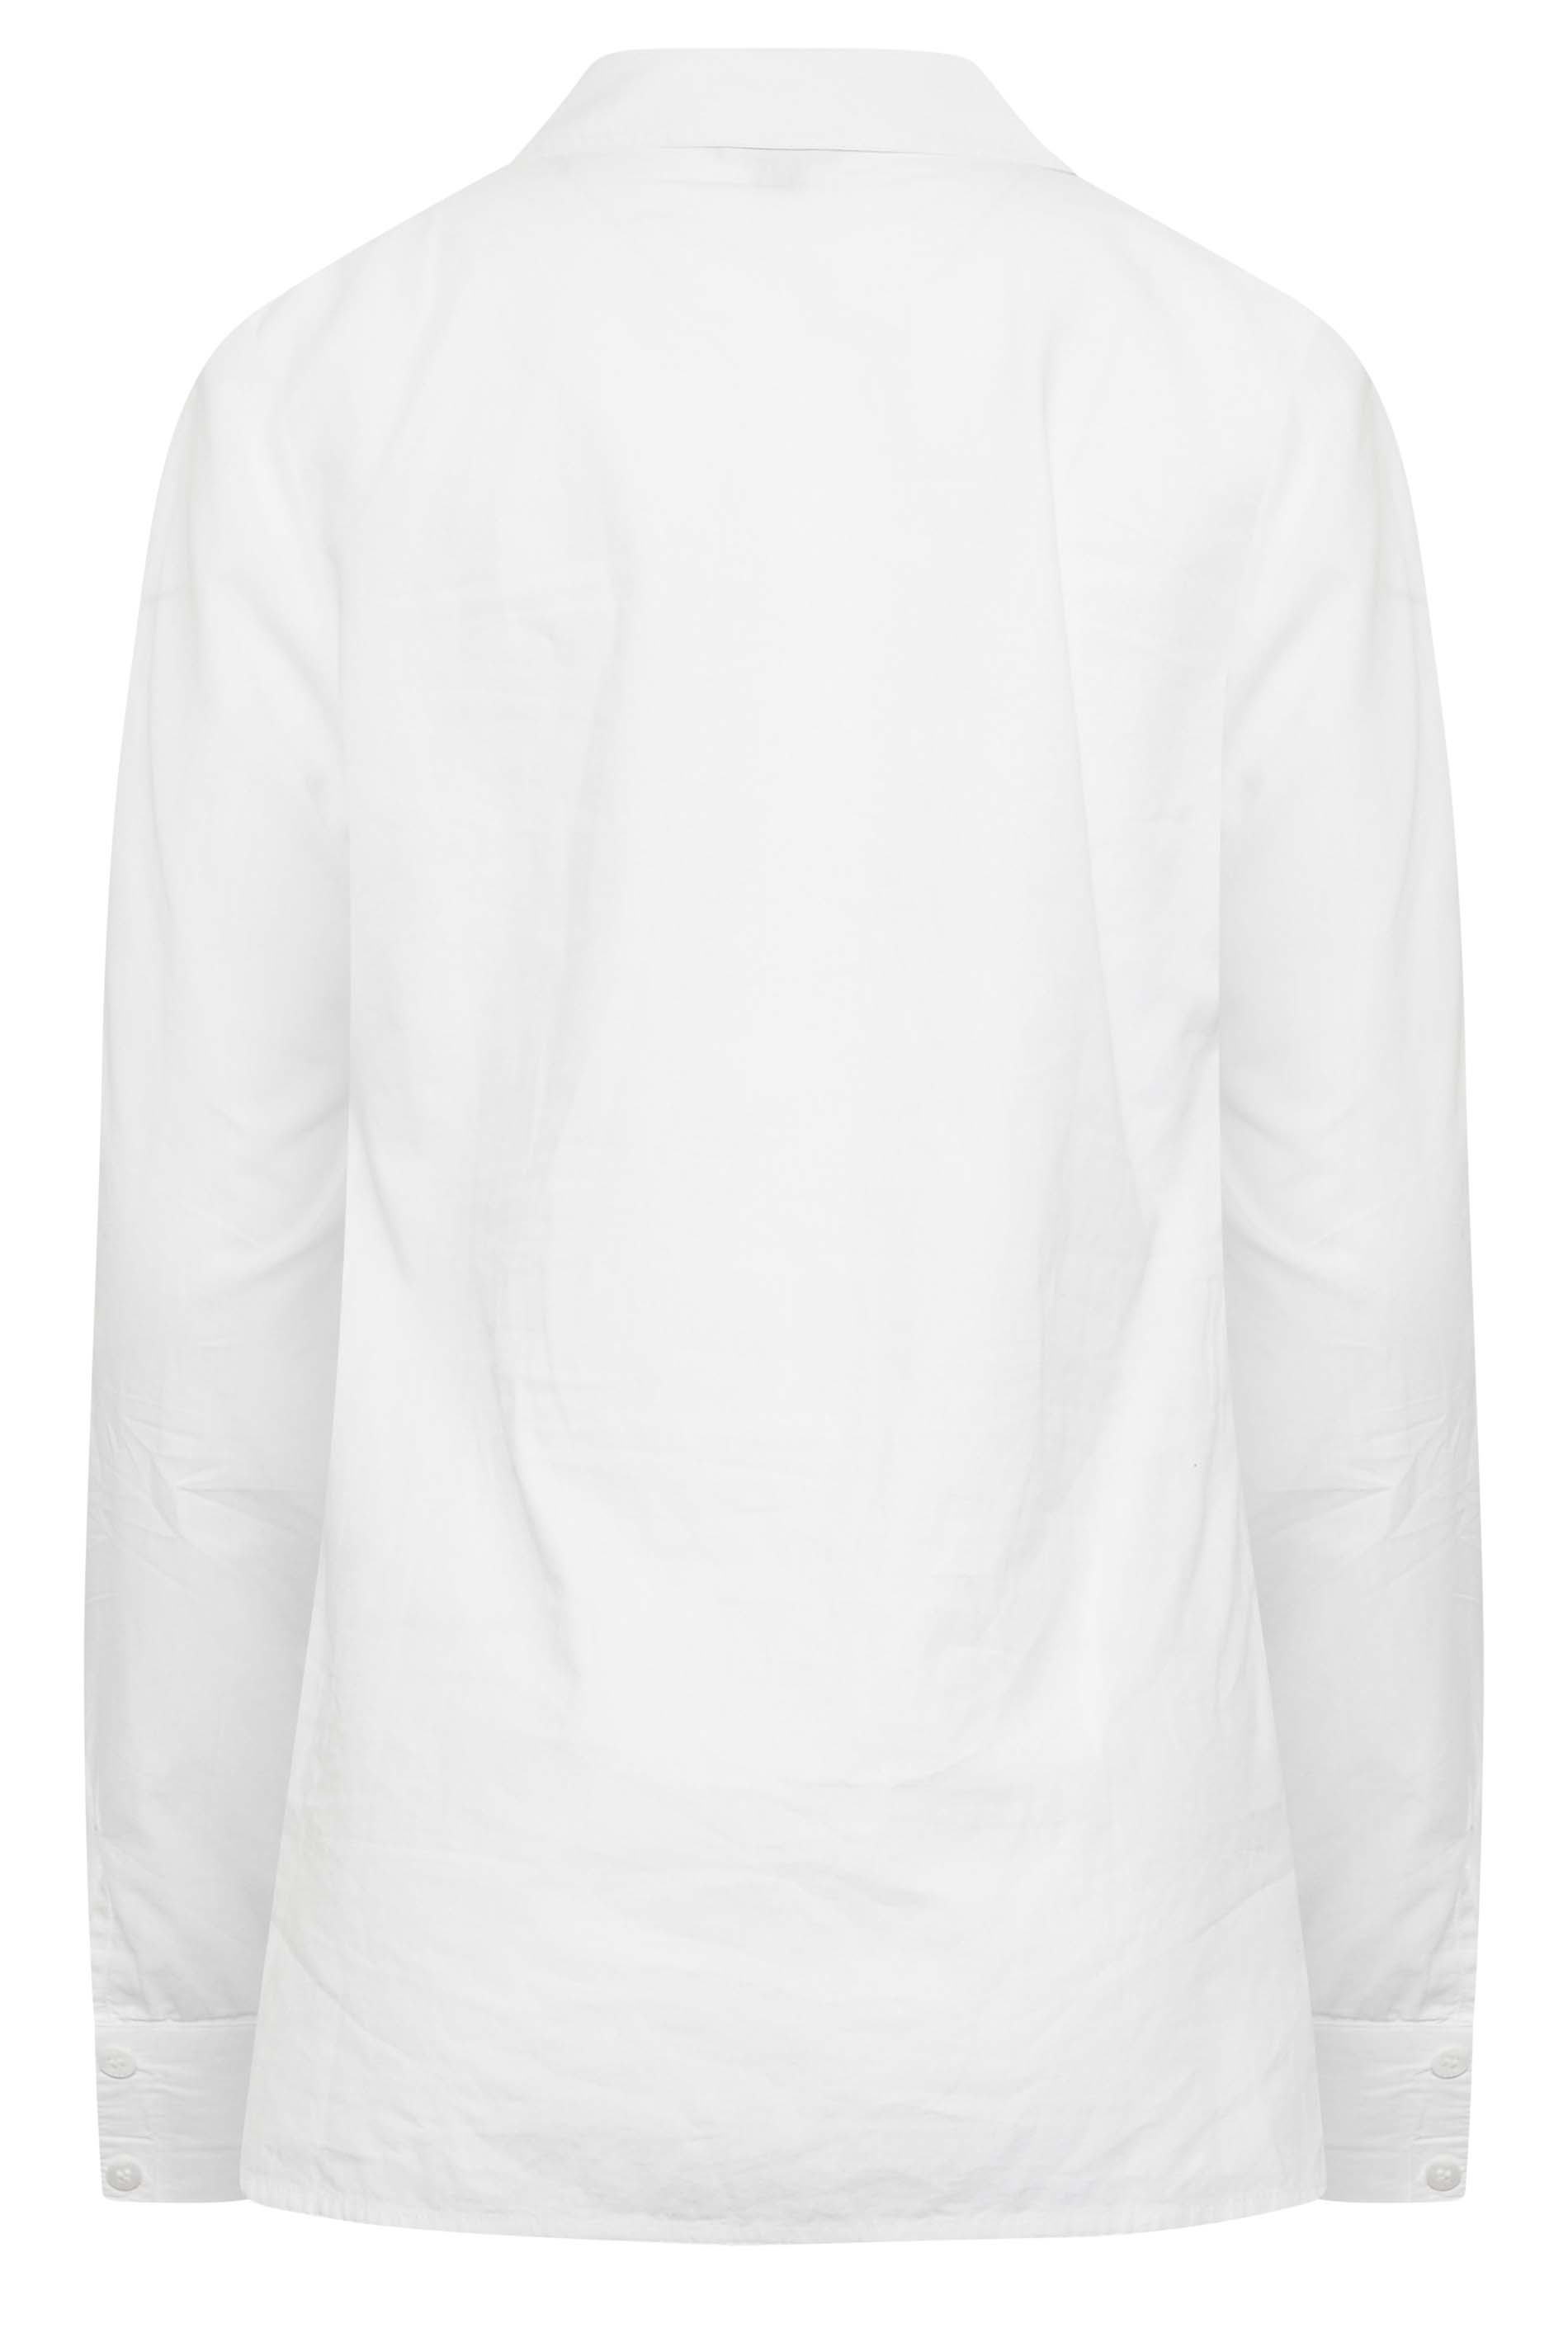 Tall Women's LTS White Cotton Shirt | Long Tall Sally  3